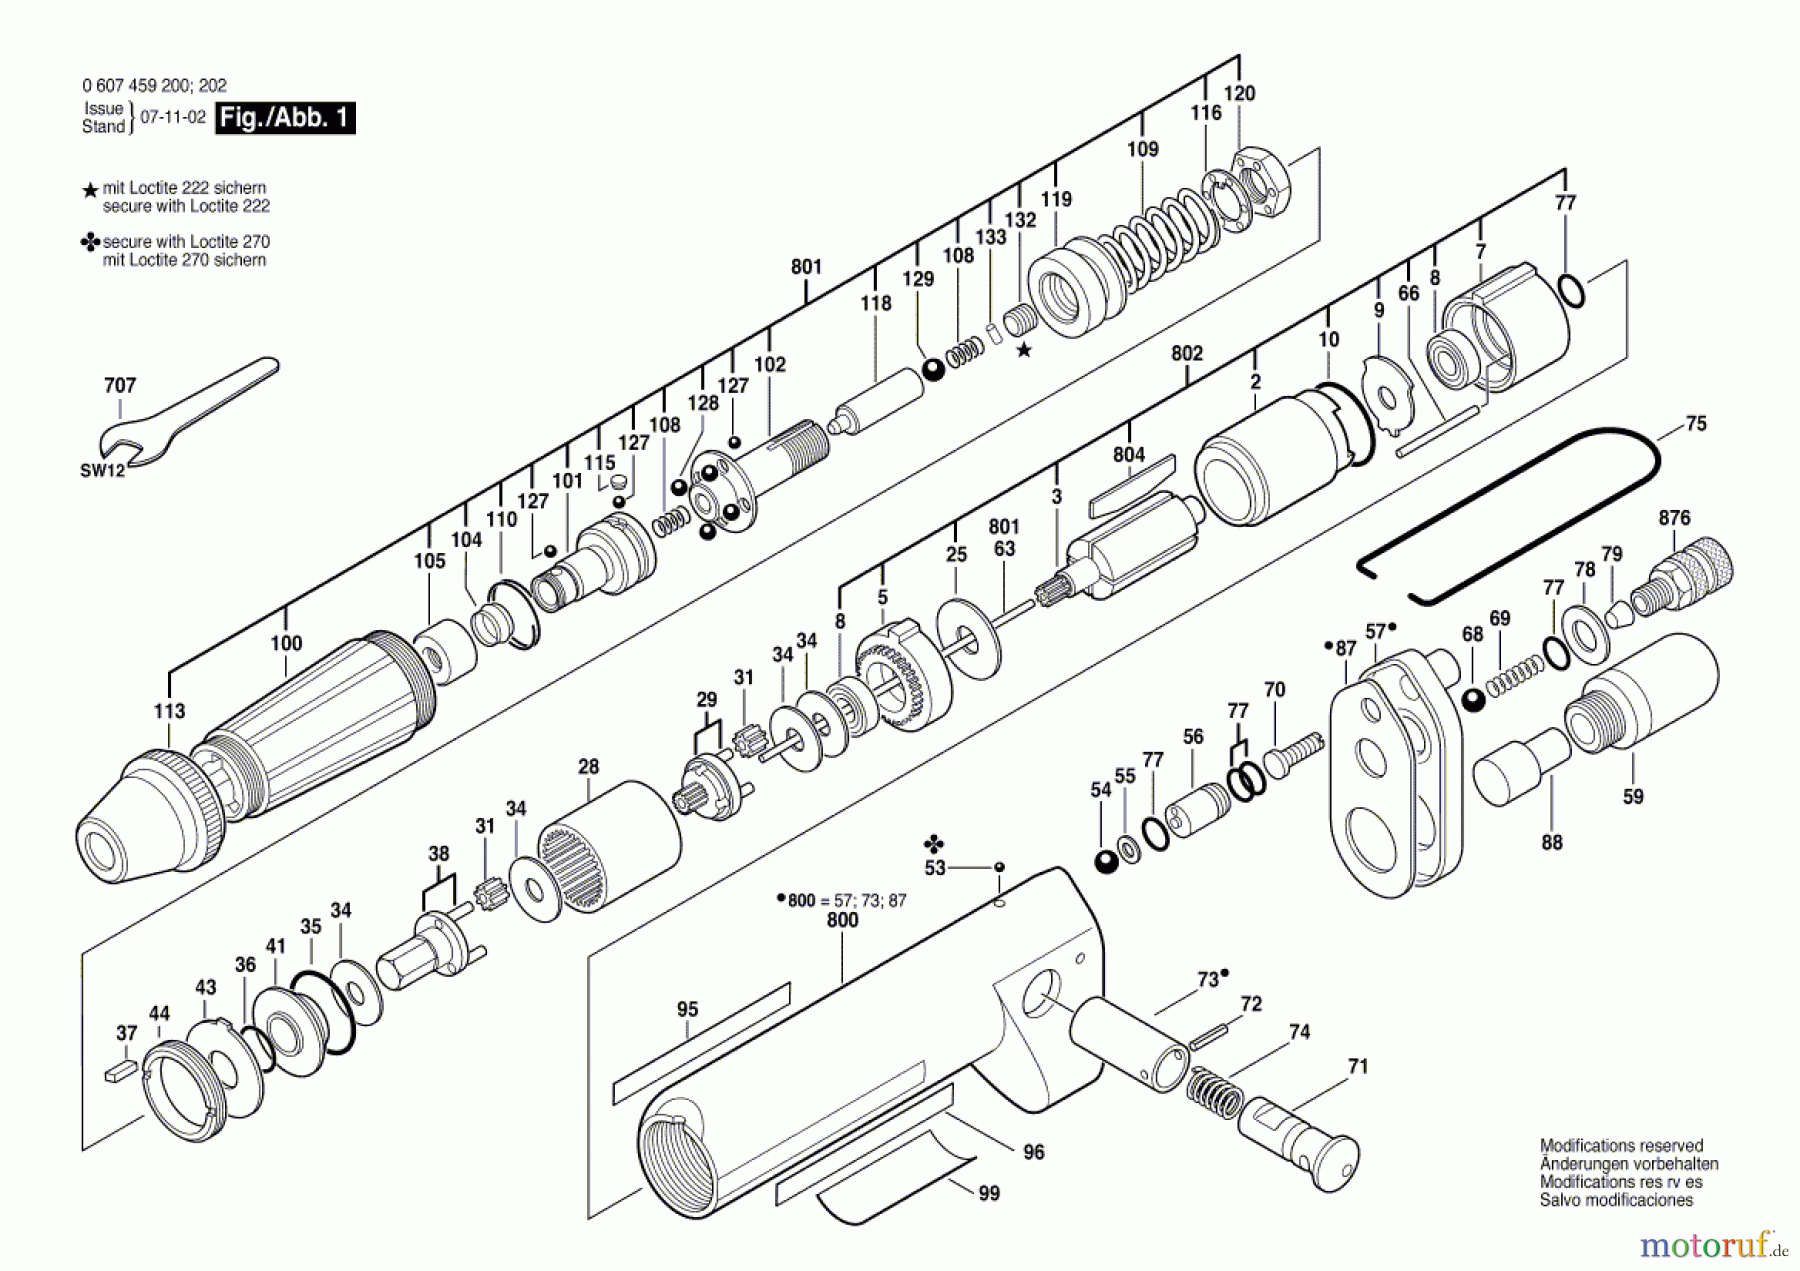  Bosch Werkzeug Pw-Schrauber-Ind 20 WATT-SERIE Seite 1